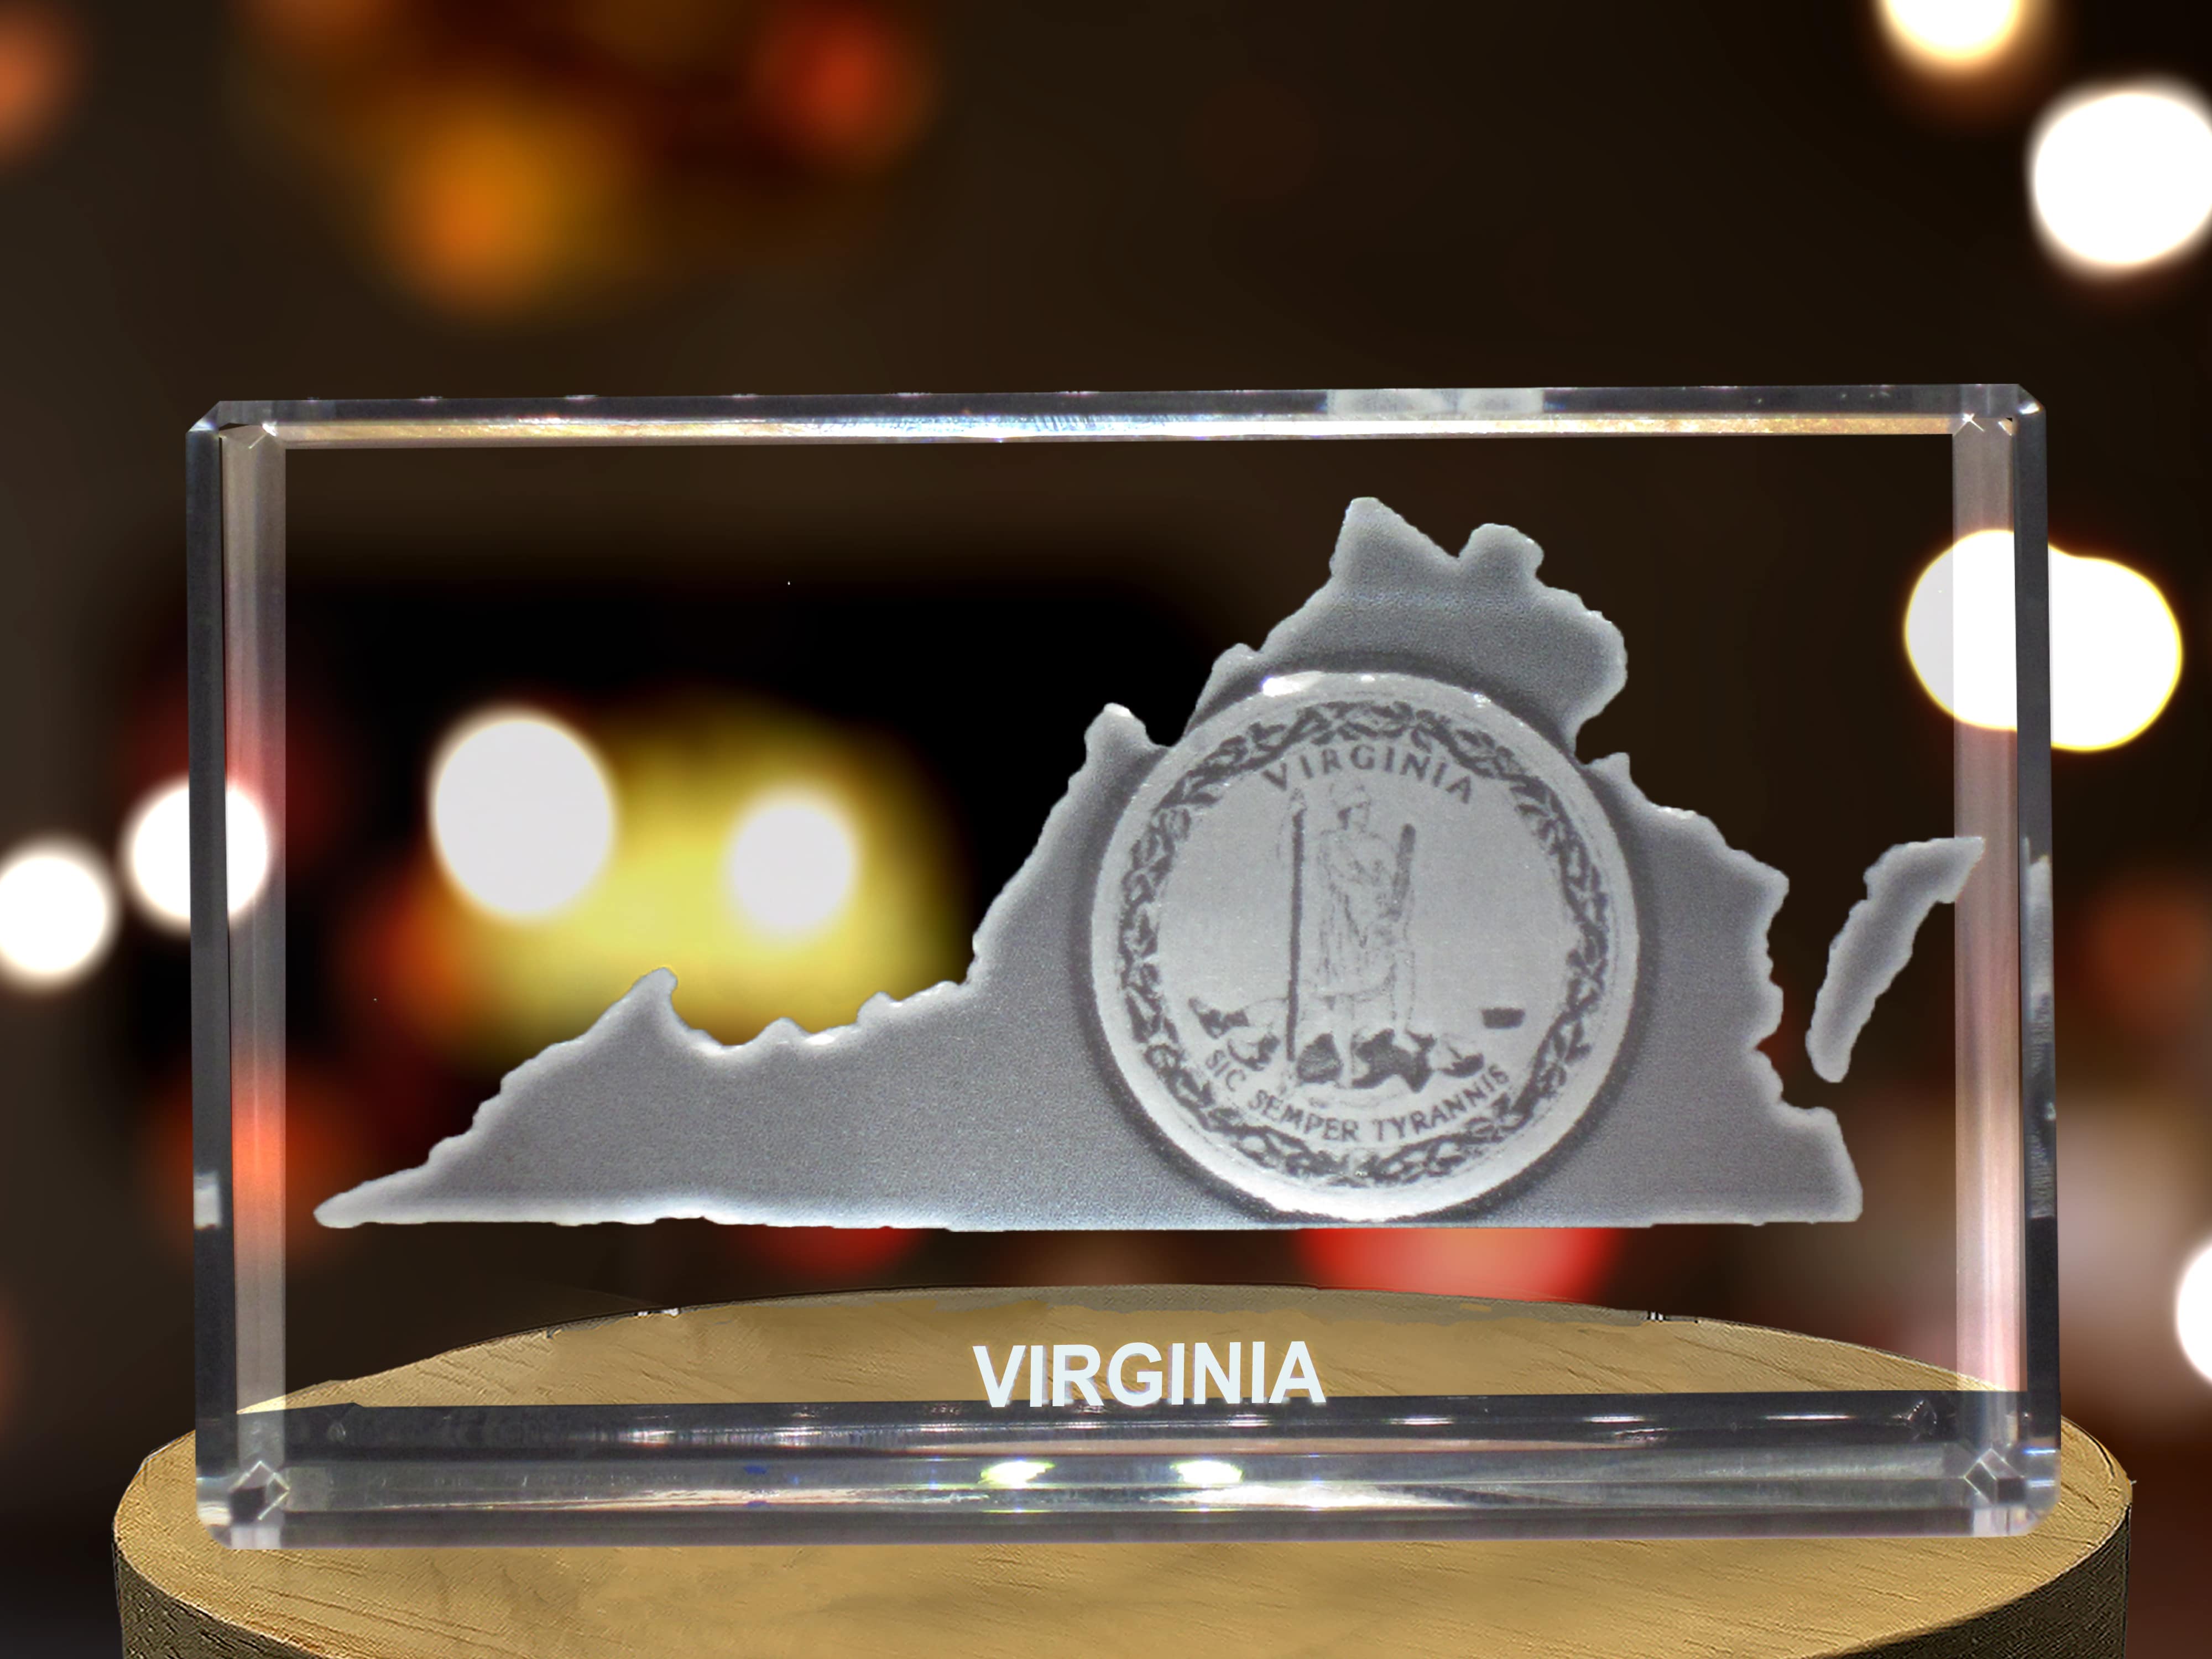 Virginia 3D Engraved Crystal 3D Engraved Crystal Keepsake/Gift/Decor/Collectible/Souvenir A&B Crystal Collection